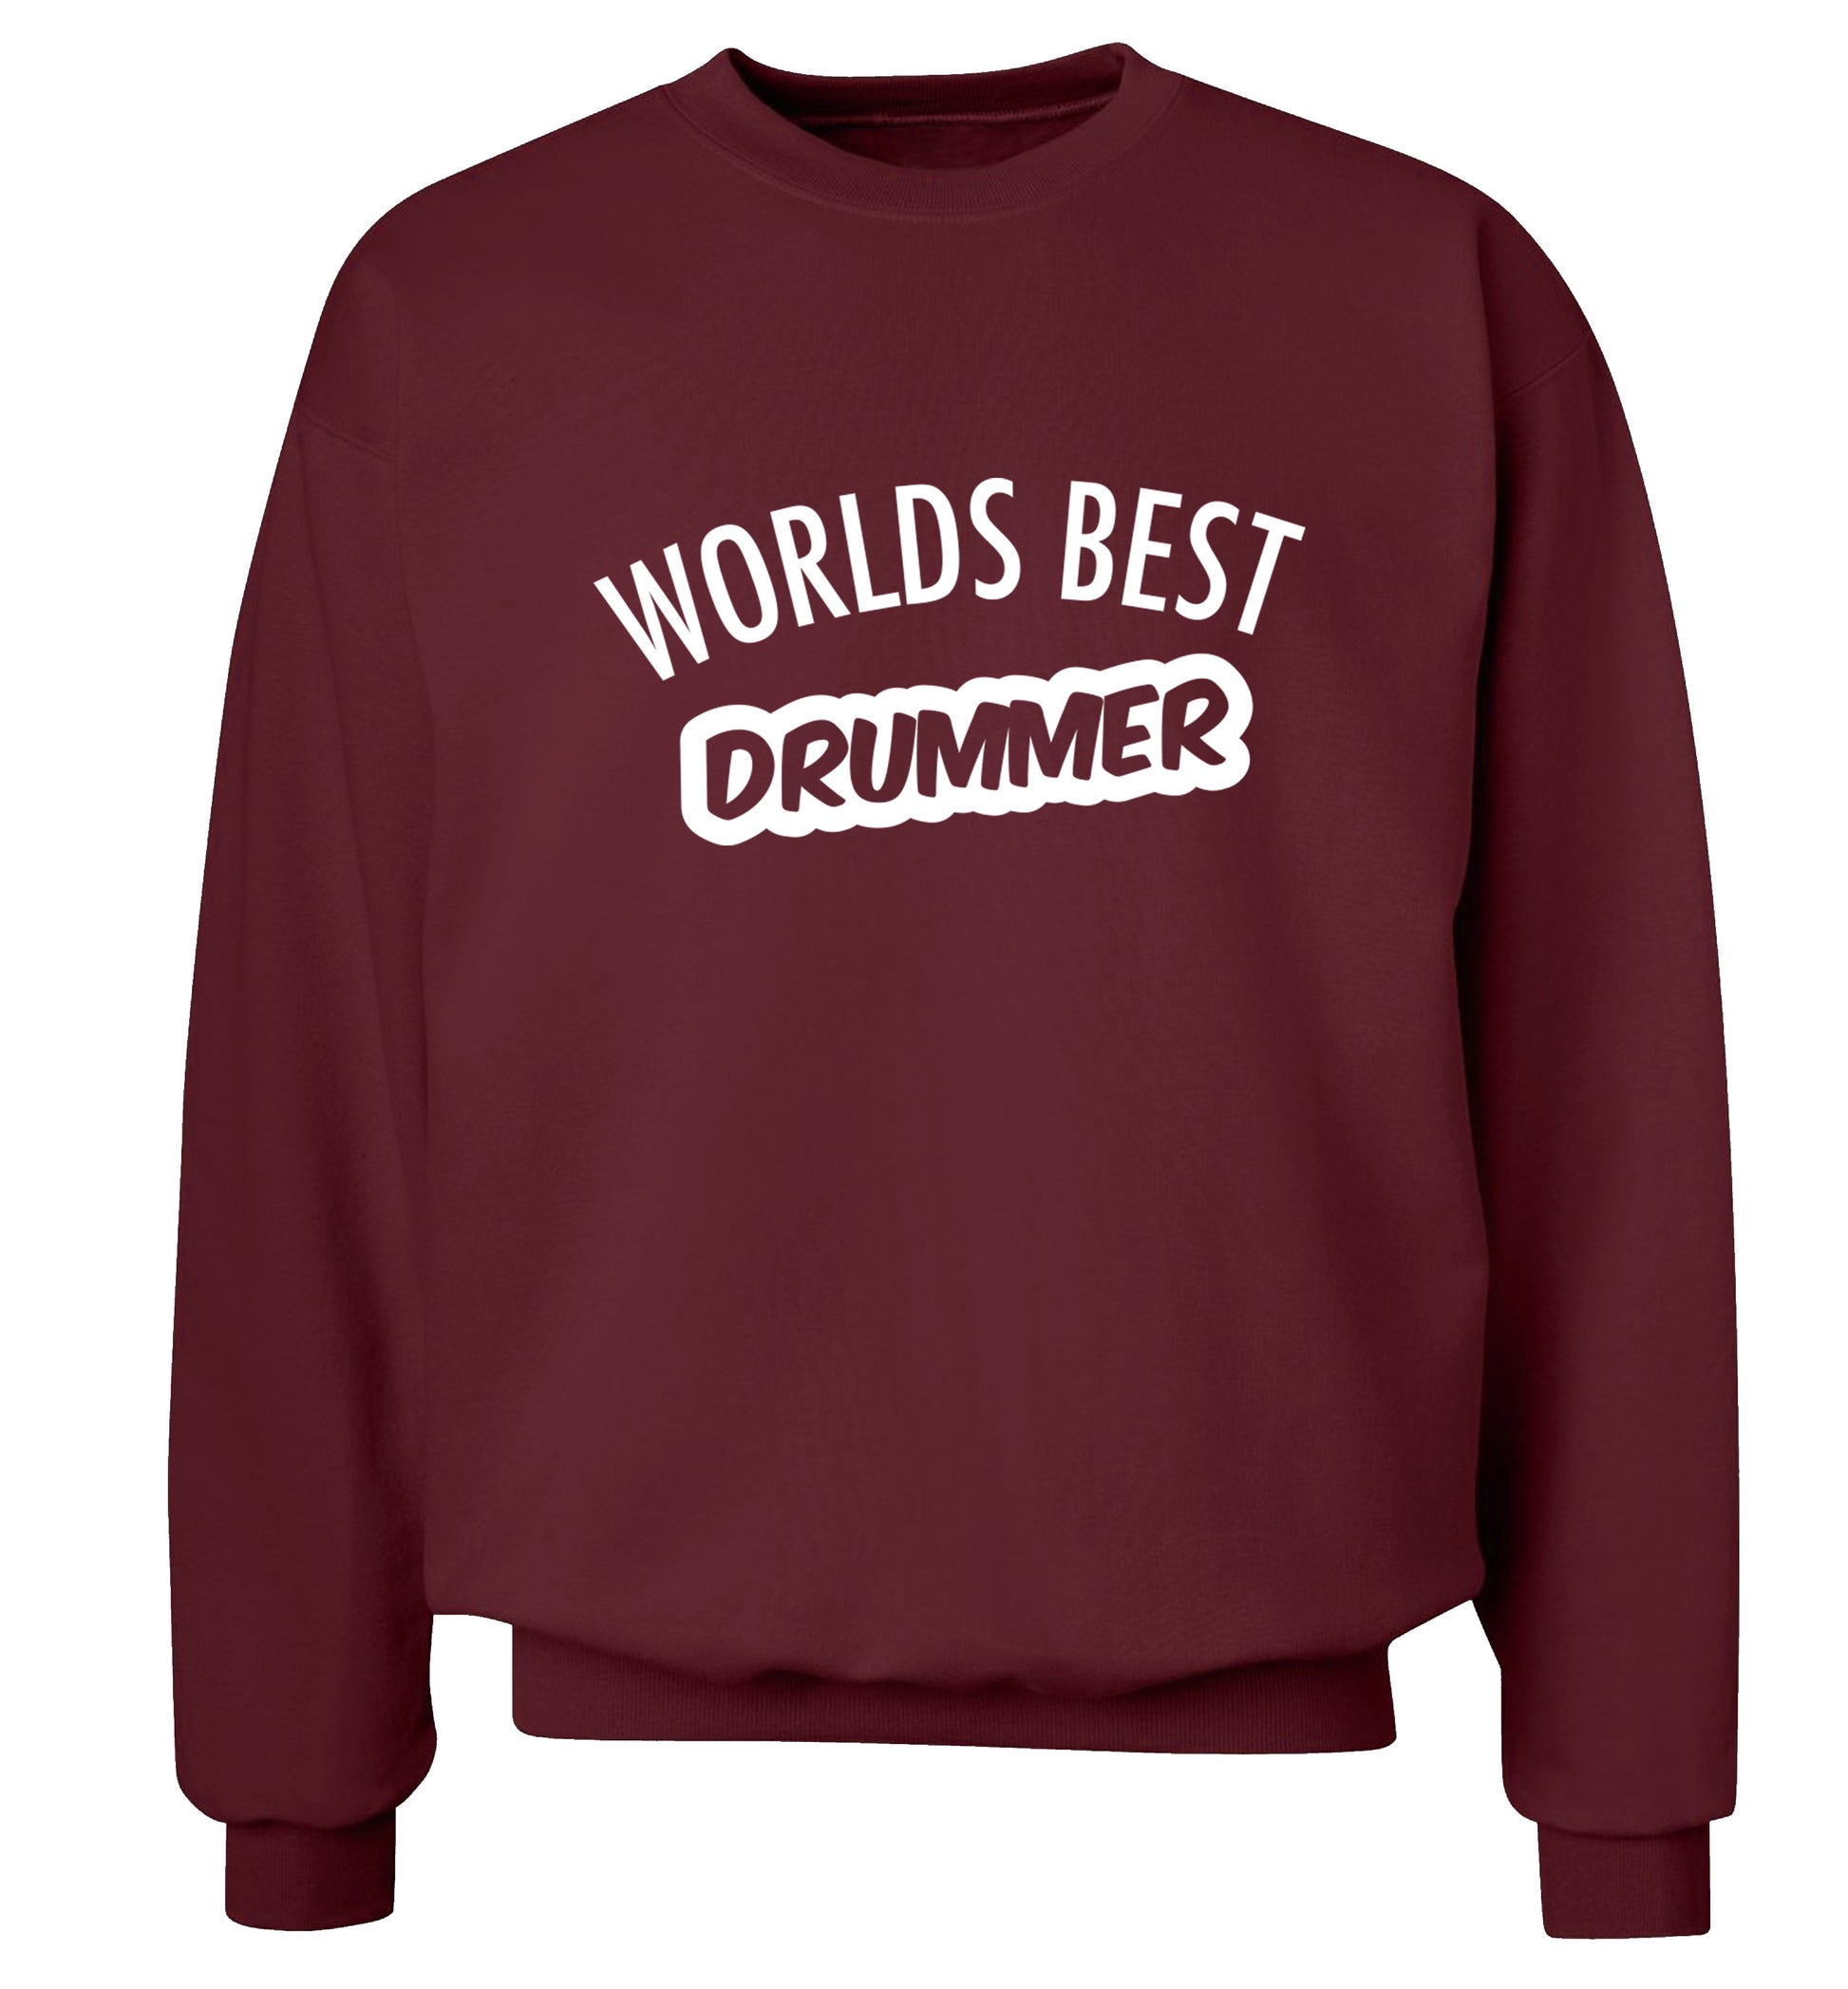 Worlds best drummer Adult's unisex maroon Sweater 2XL